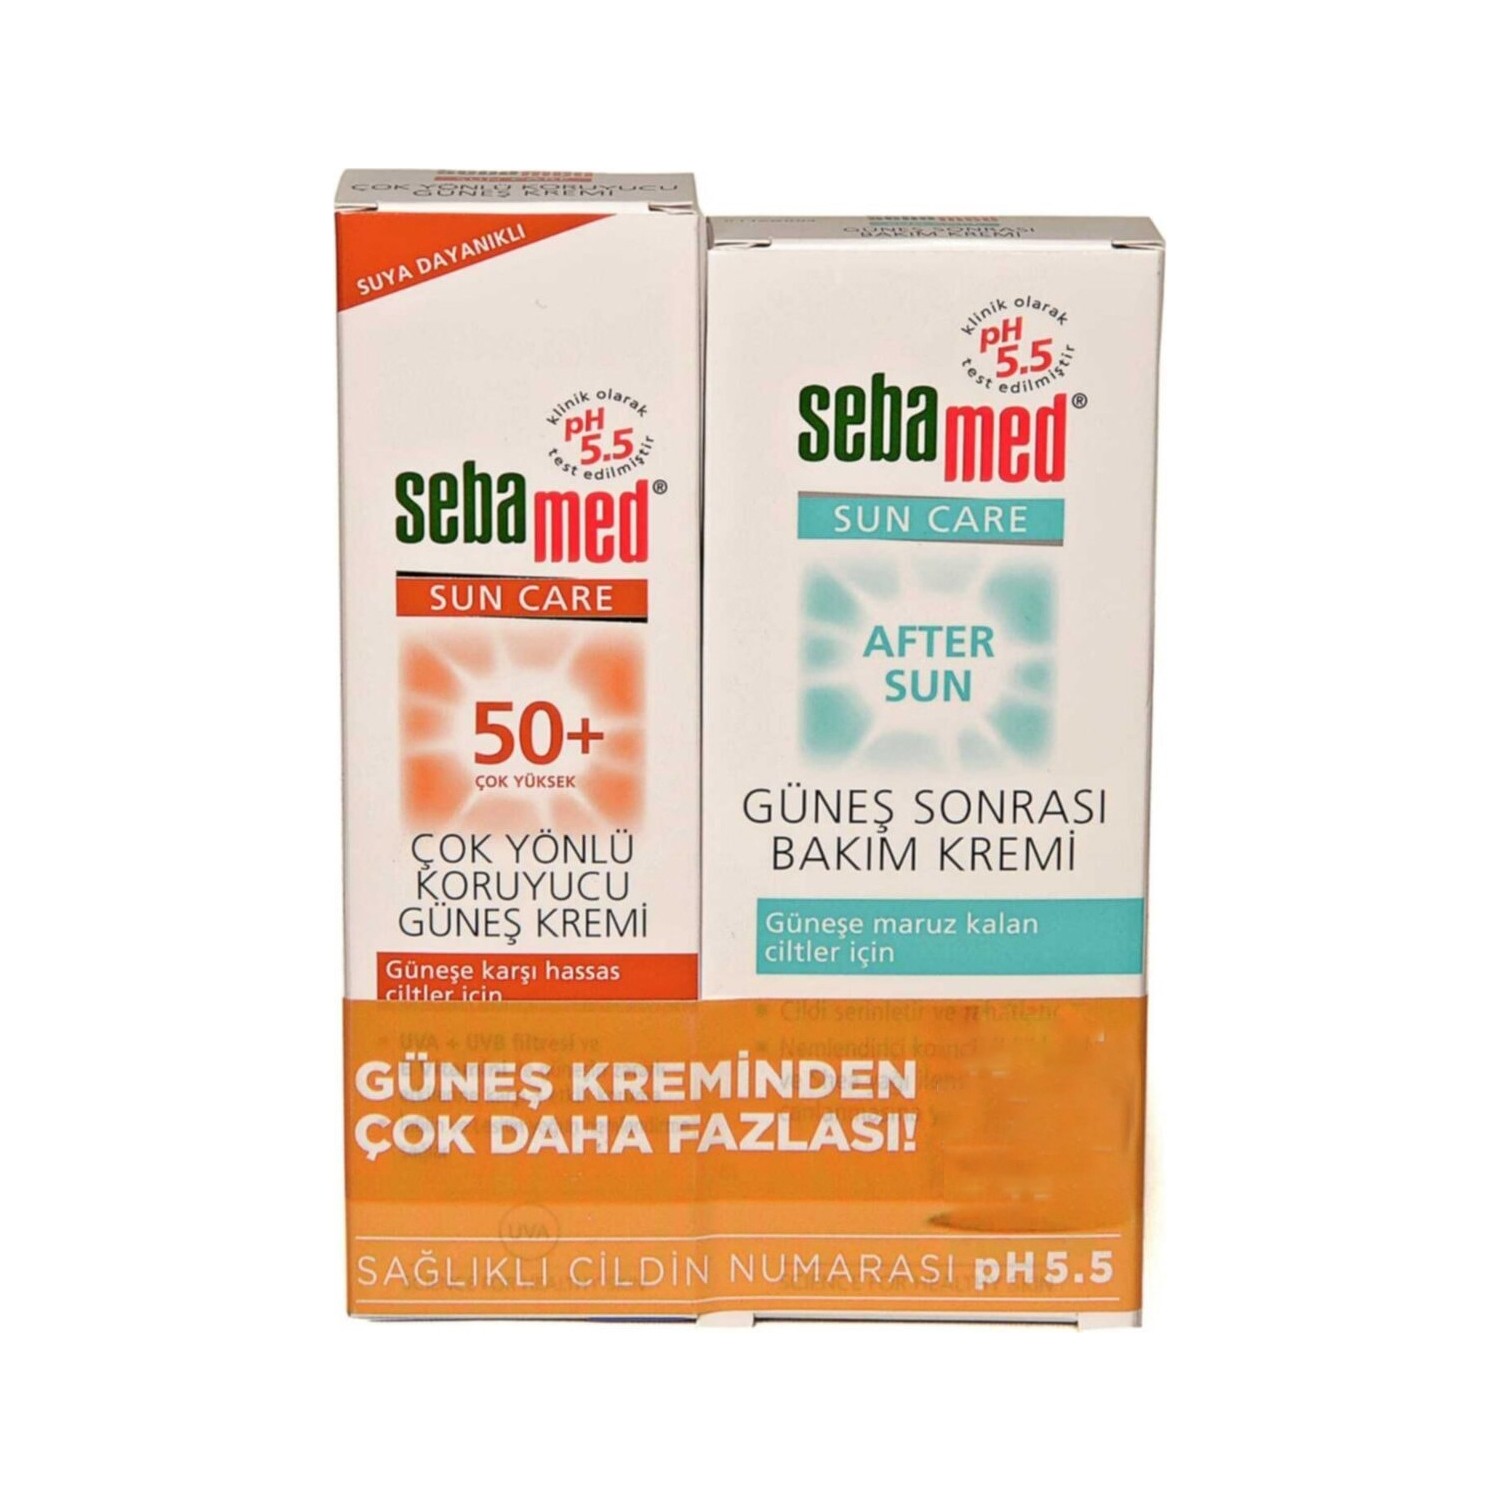 Солнцезащитный крем Sebamed Sun Care SPF 50+, 100 мл крем для комбинированной кожи spf 15 гельтек нome care 30 мл